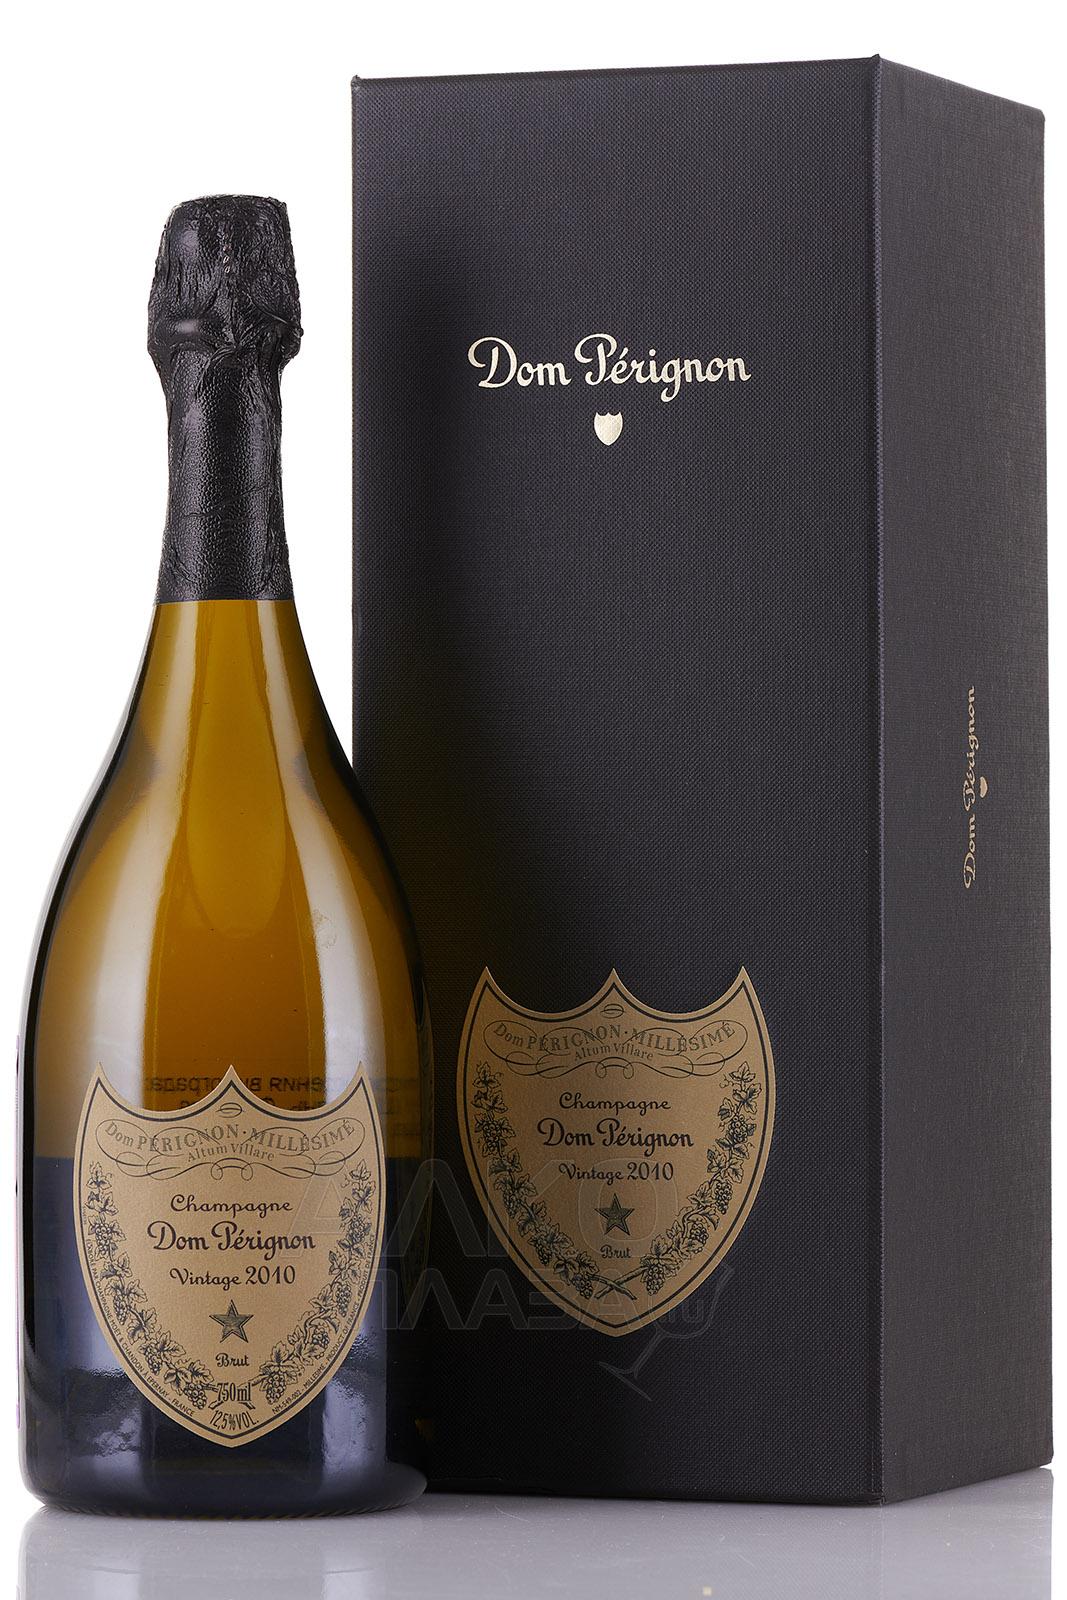 Какой срок годности у шампанского Дома Периньон?